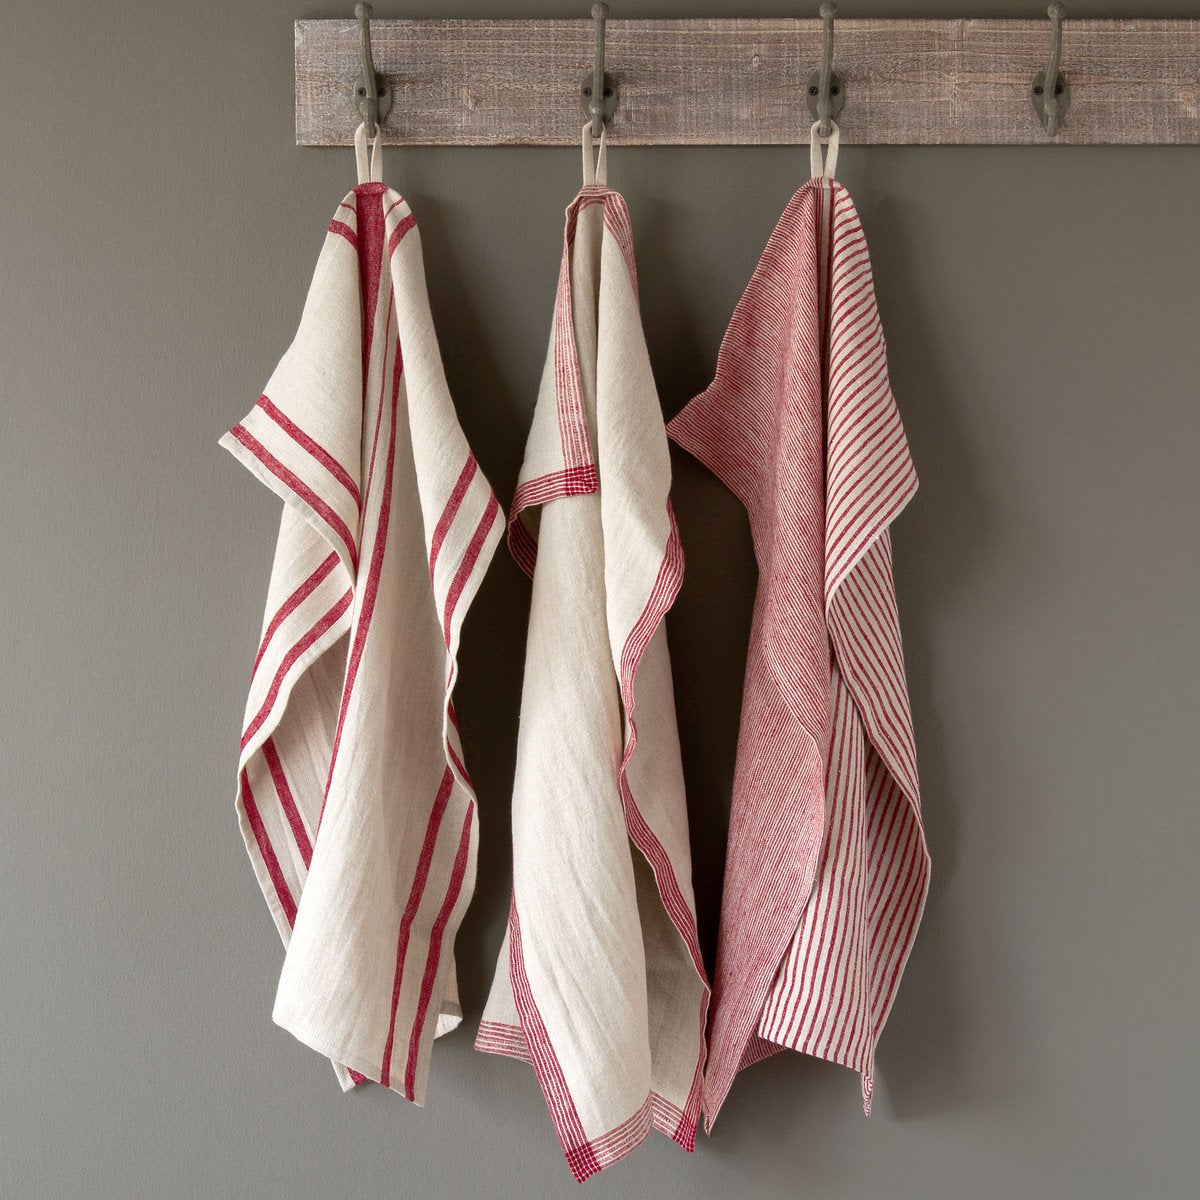 Soft Linen Dish Towel - Reds - Moss & Embers Home Decorum